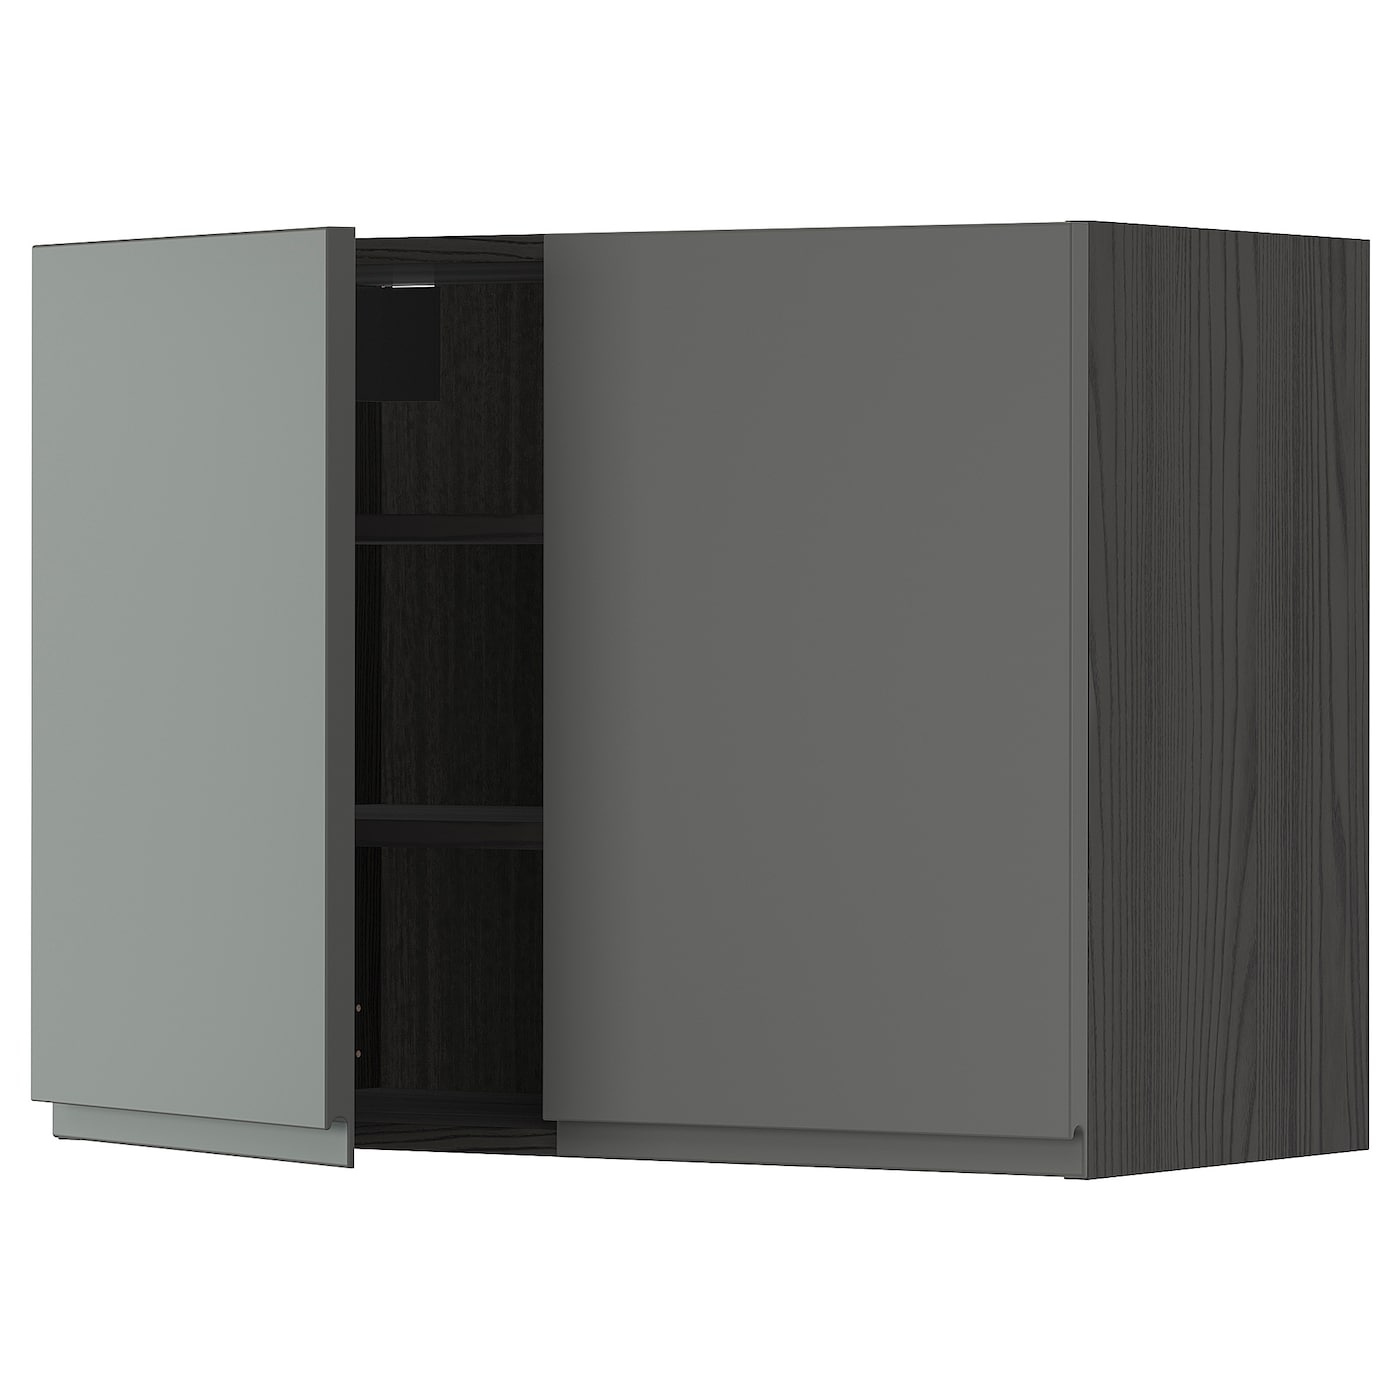 Навесной шкаф с полкой - METOD IKEA/ МЕТОД ИКЕА, 80х60 см, черный/серый